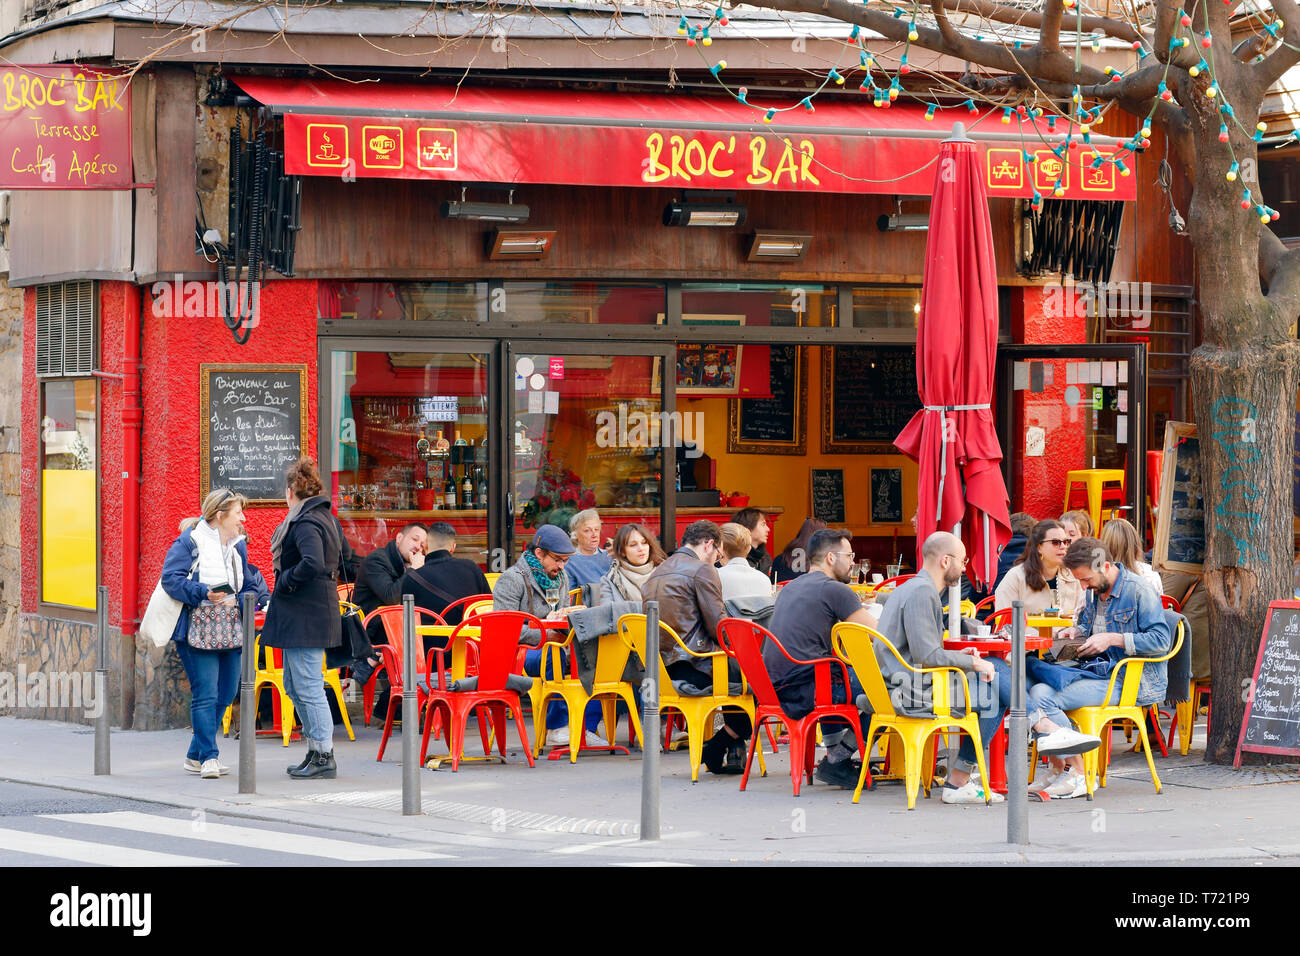 Broc' Bar, 20 rue Lanterne, Lyon, Frankreich. Menschen in einem Straßencafé. Stockfoto